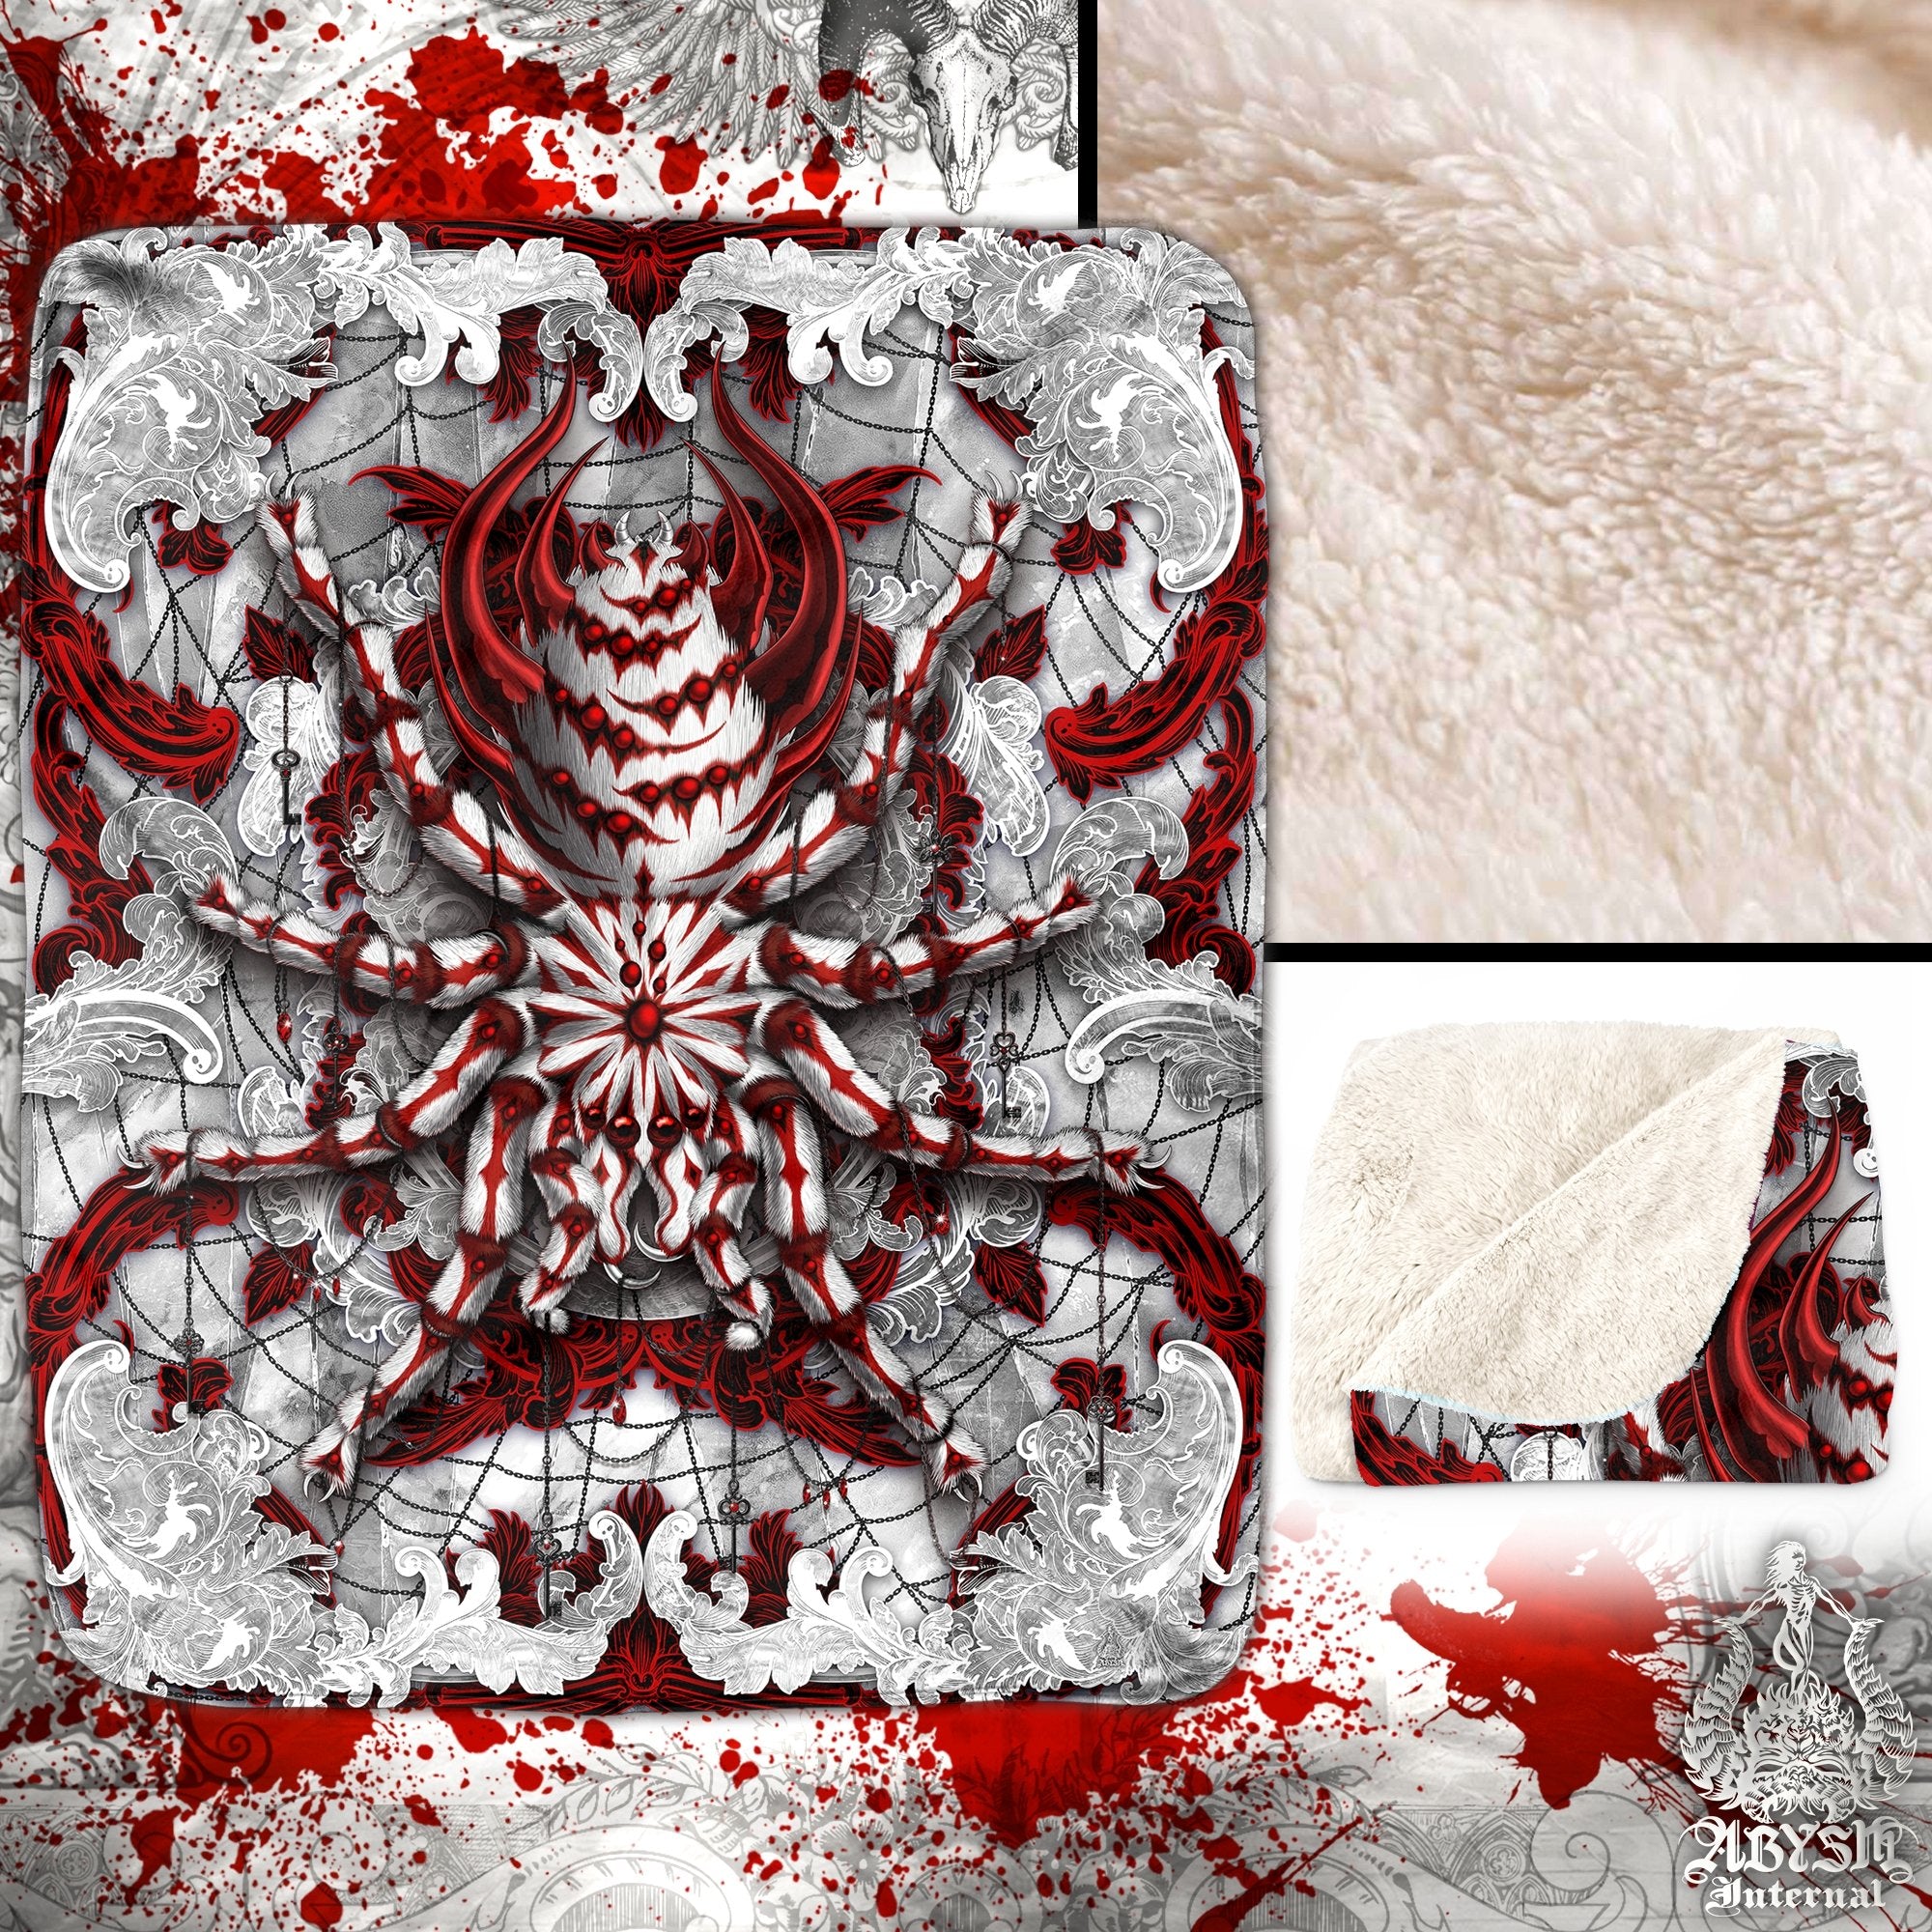 White Goth Throw Fleece Blanket, Dark Gift, Gothic Home Decor, Alternative Art Gift - Bloody Spider, Tarantula Art - Abysm Internal